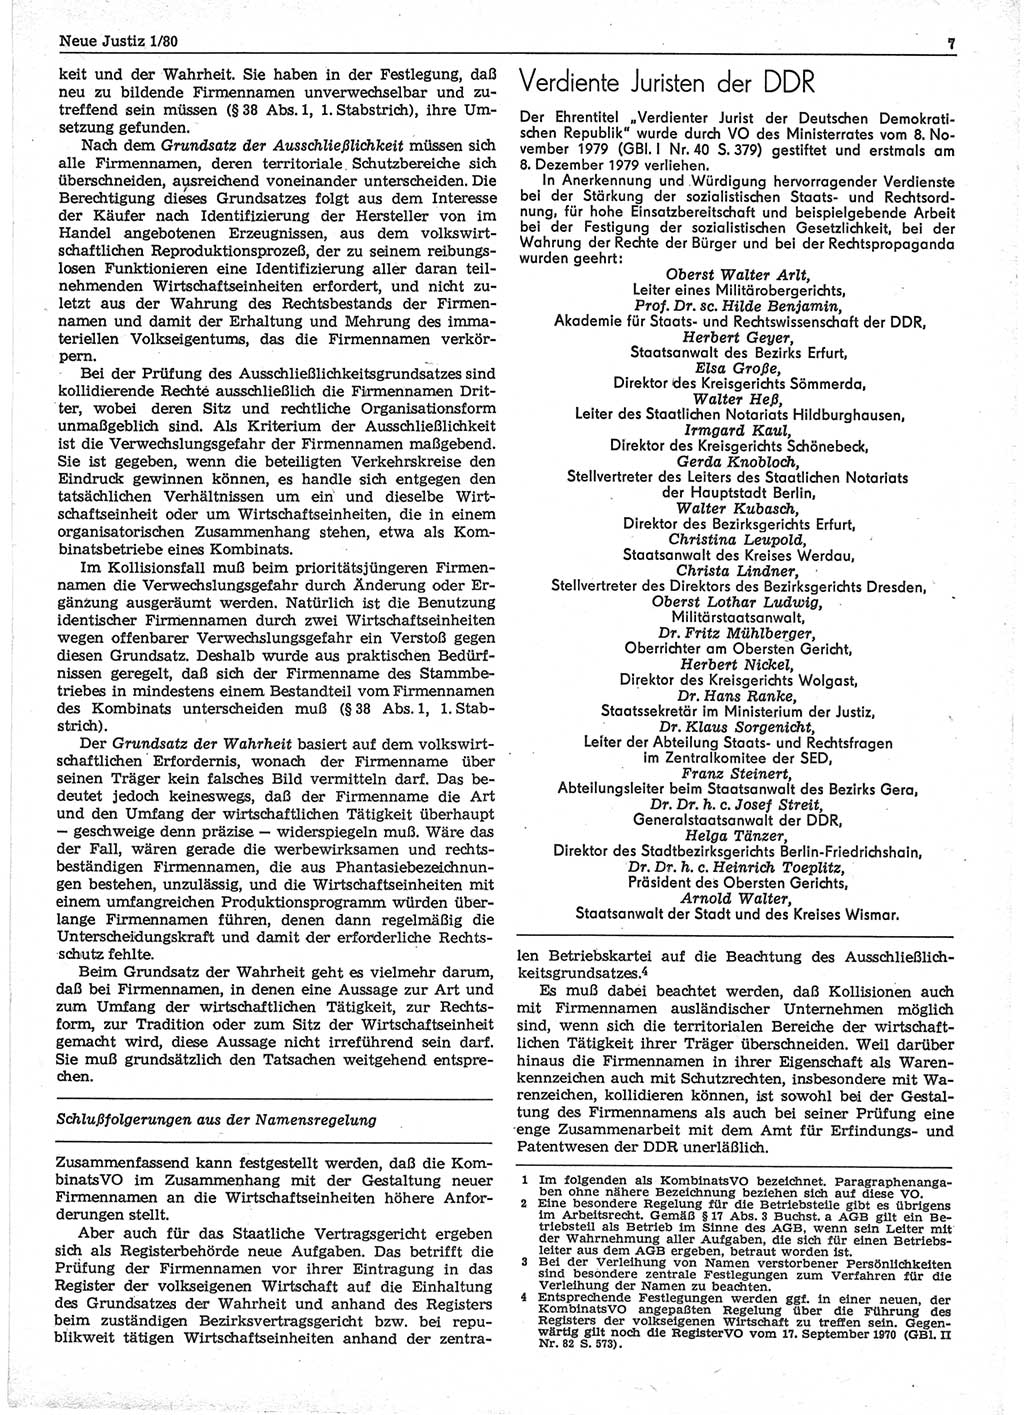 Neue Justiz (NJ), Zeitschrift für sozialistisches Recht und Gesetzlichkeit [Deutsche Demokratische Republik (DDR)], 34. Jahrgang 1980, Seite 7 (NJ DDR 1980, S. 7)